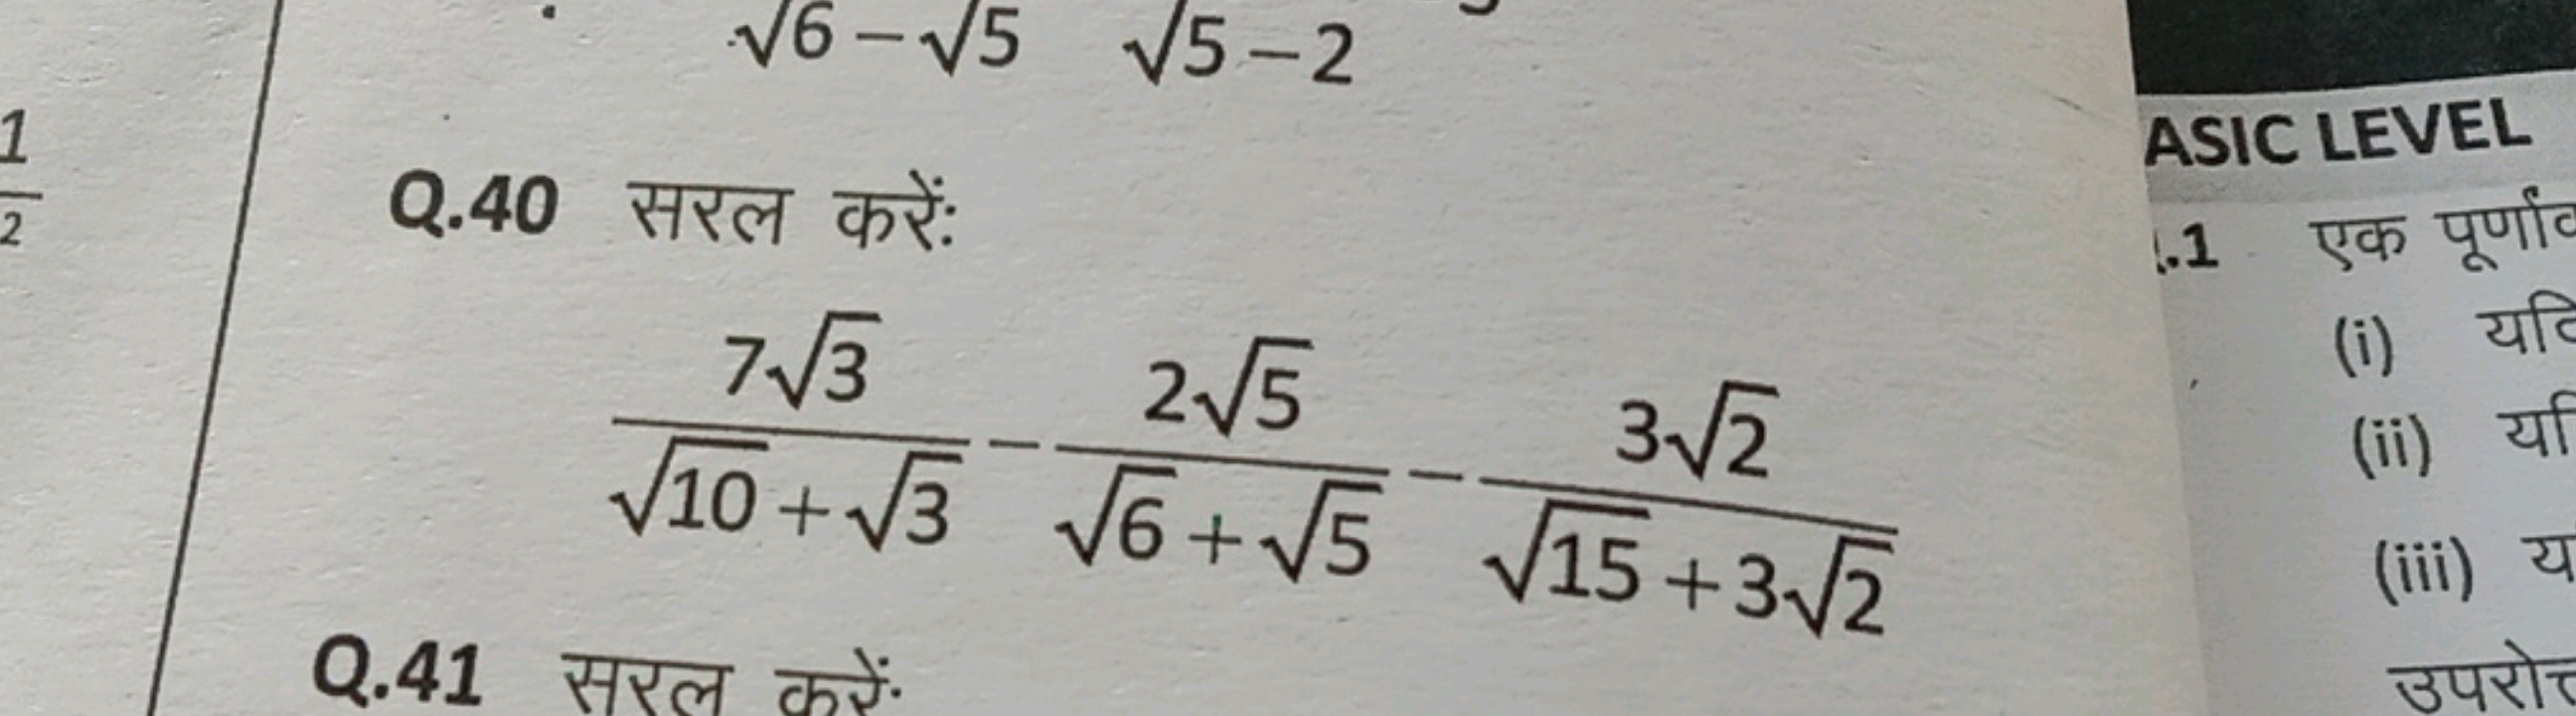 Q.40 सरल करें:
ASIC LEVEL
10​+3​73​​−6​+5​25​​−15​+32​32​​
